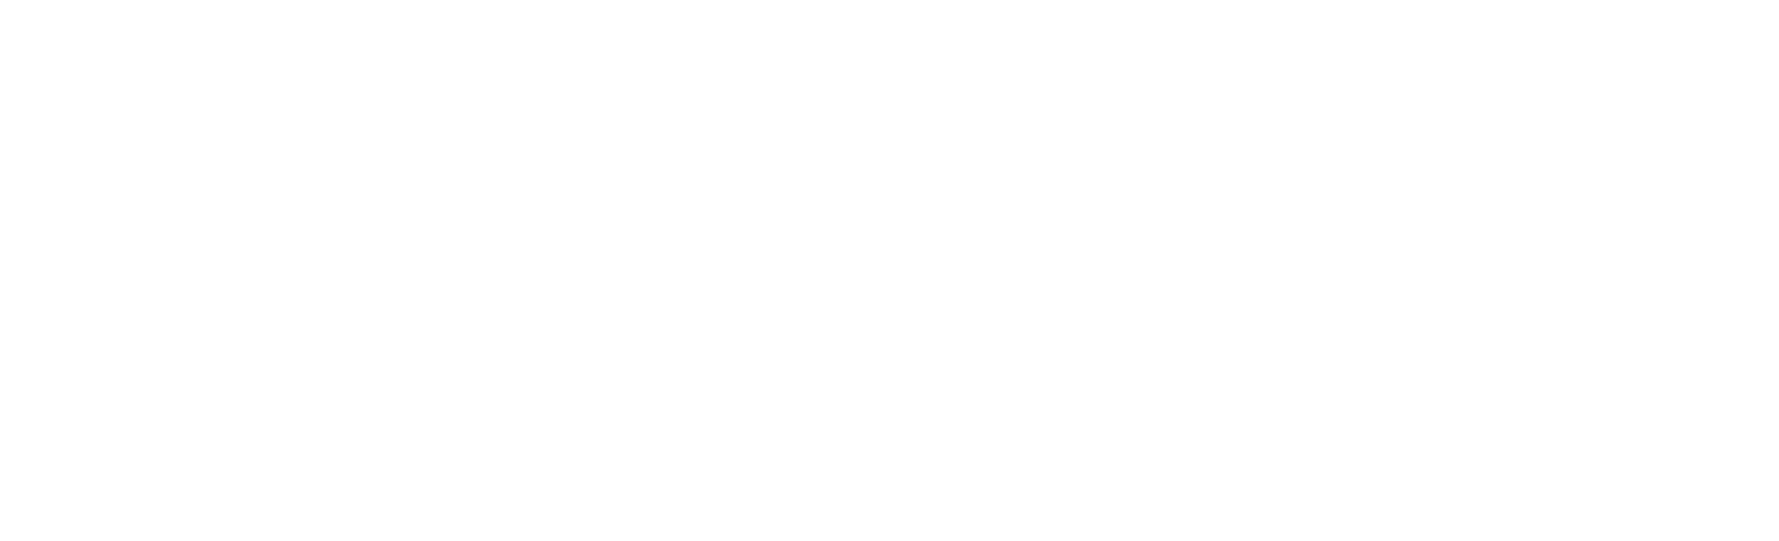 Alabama Shipyard LLC - 